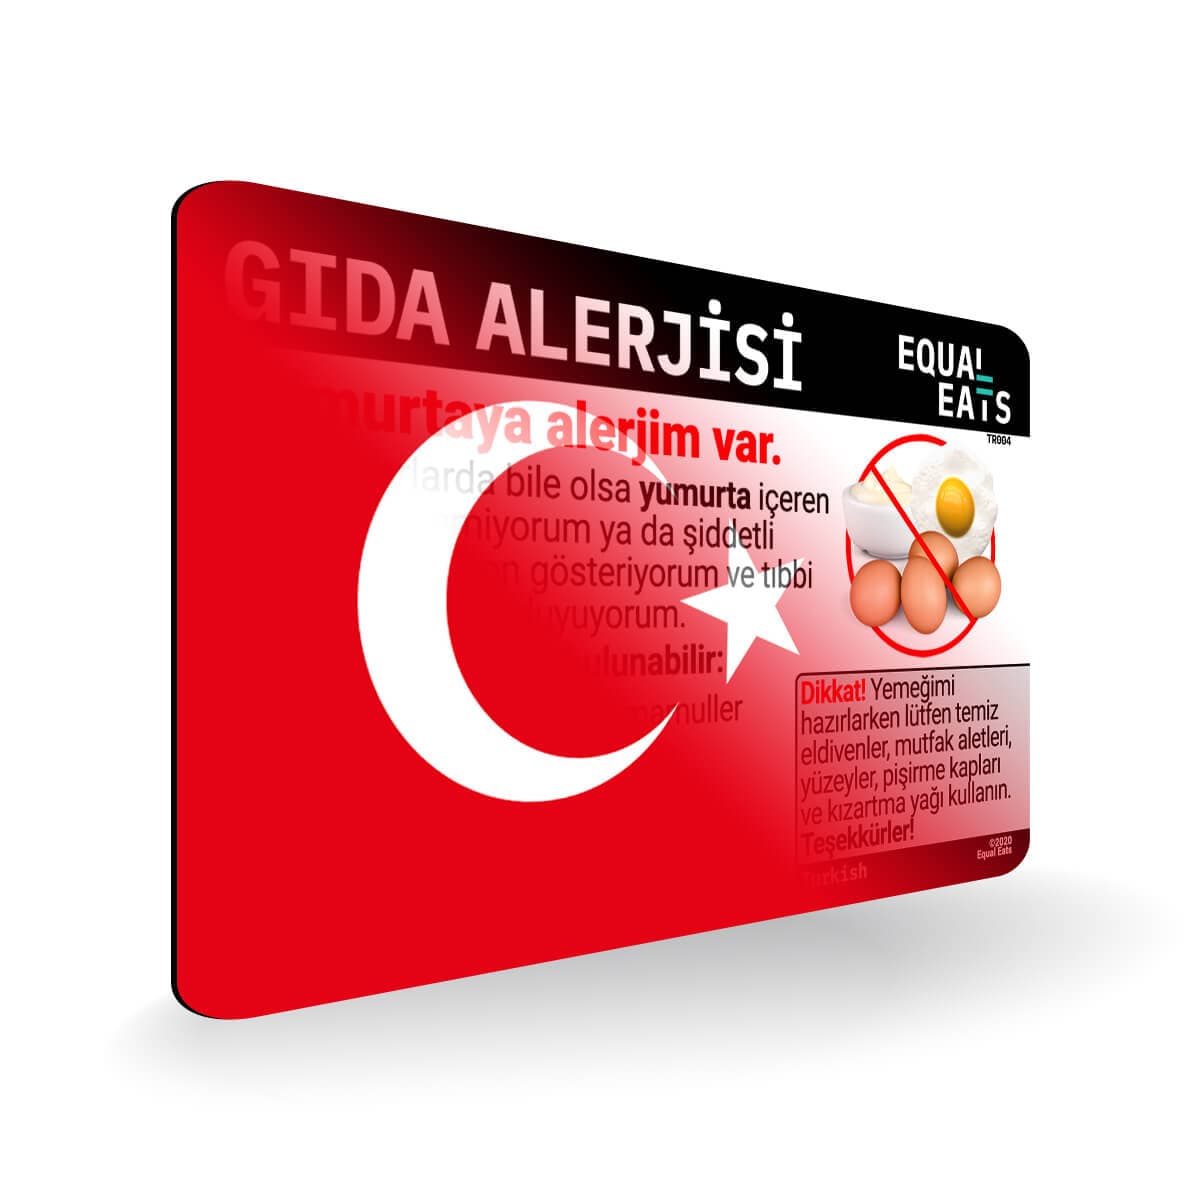 Egg Allergy in Turkish. Egg Allergy Card for Turkey